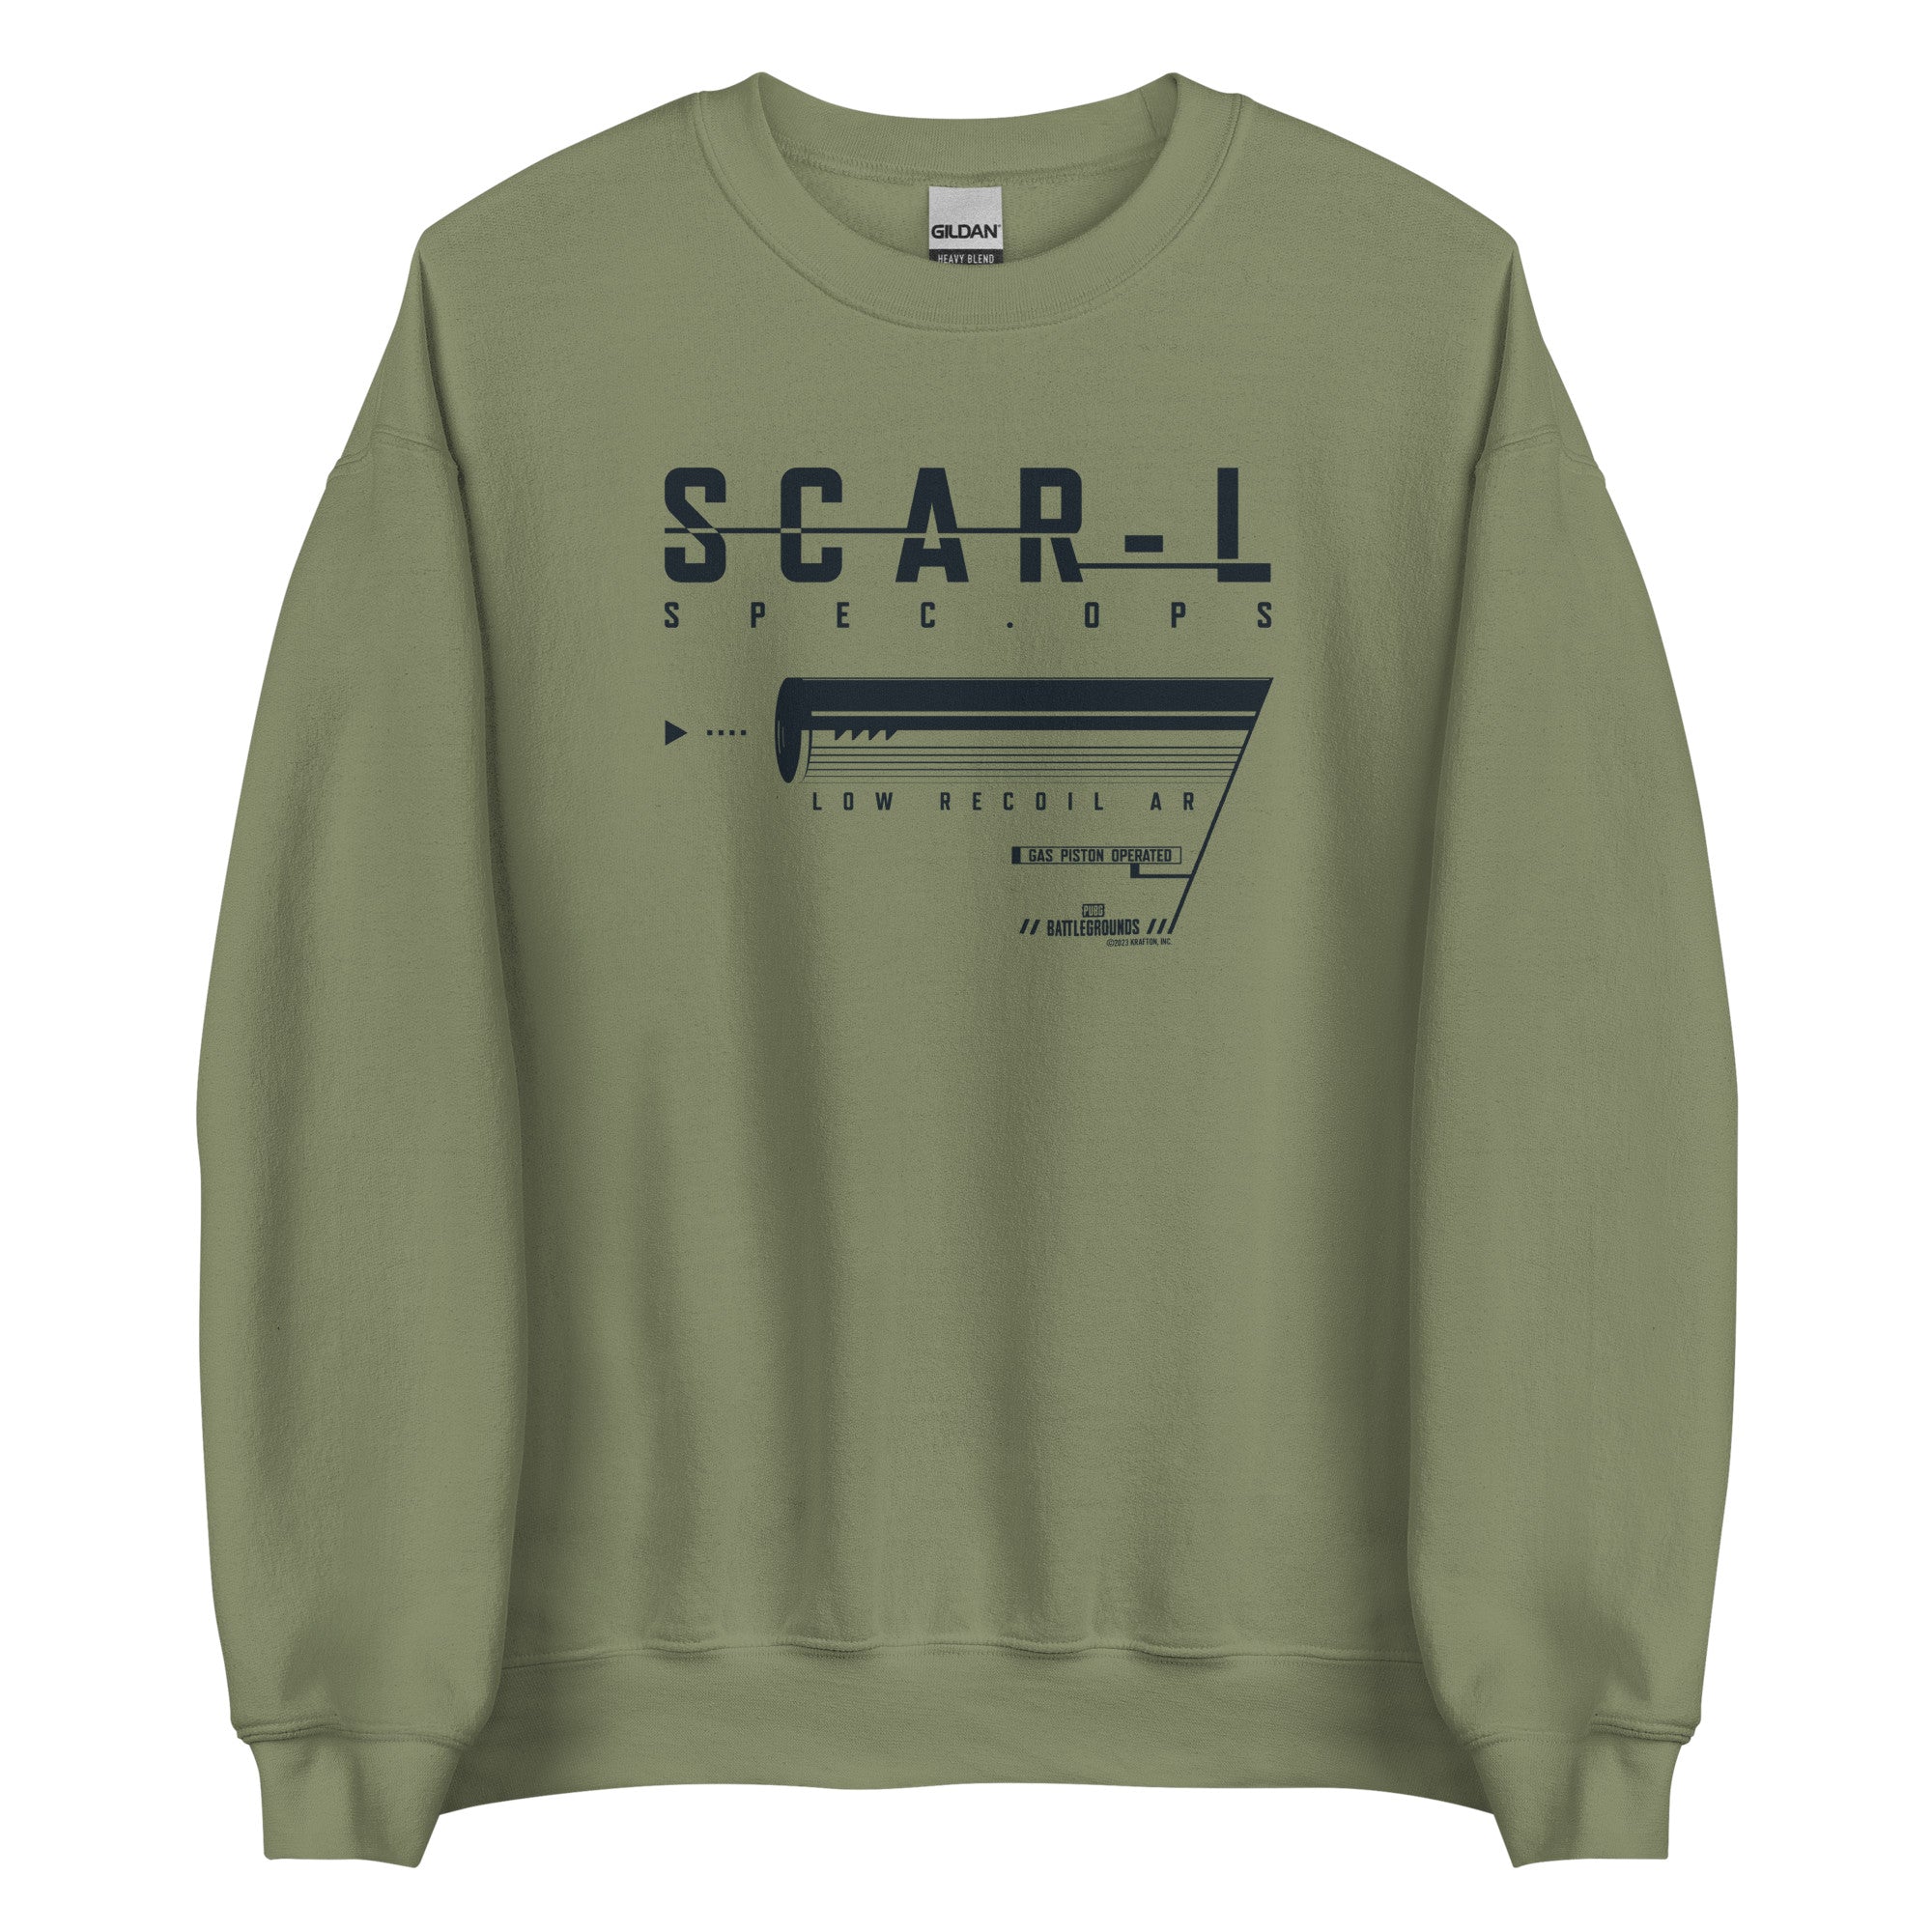 Wave 3-SCAR L Spec Ops Fleece Crewneck Sweatshirt